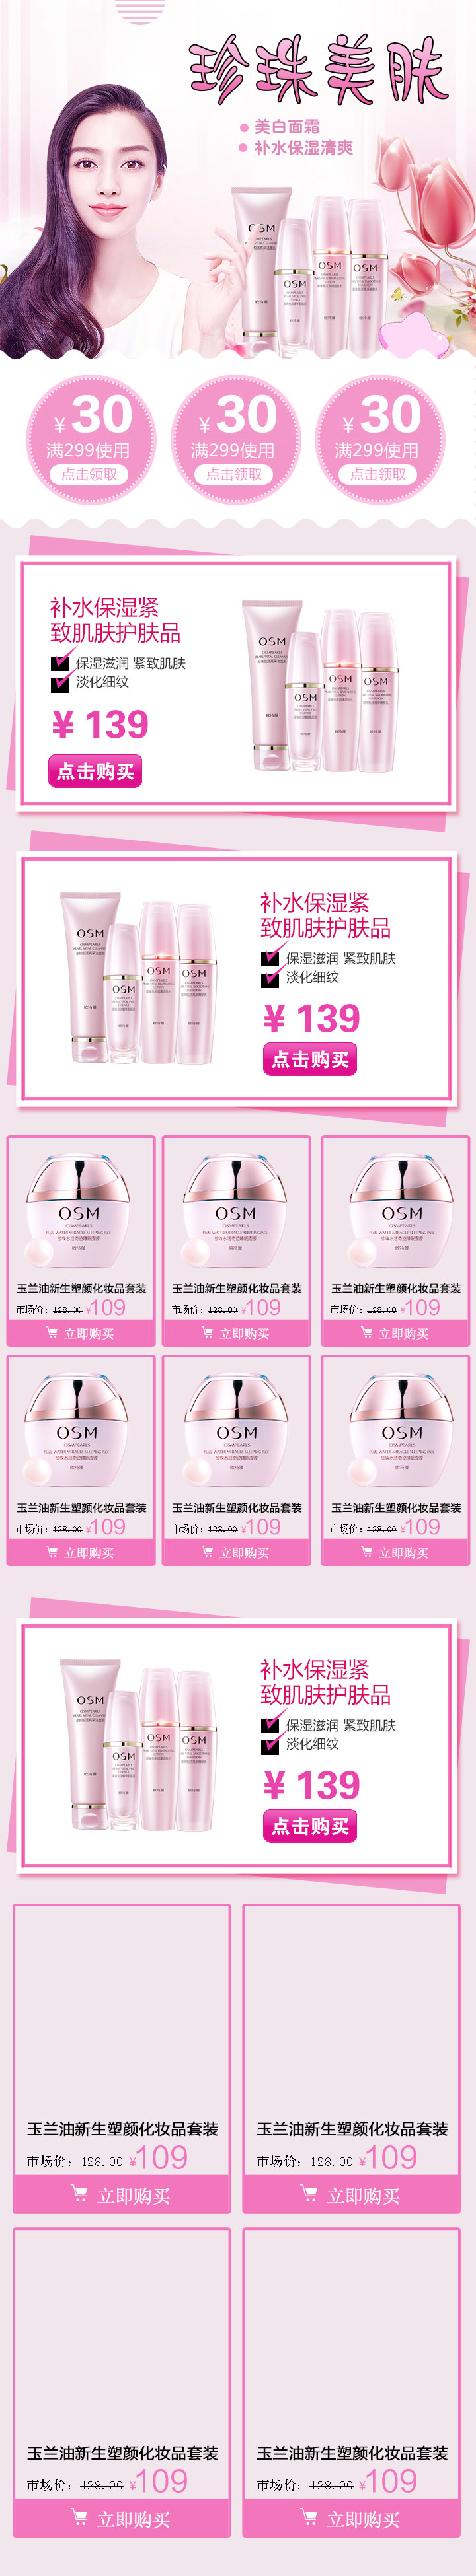 粉色甜美风化妆品手机端首页模版PSD